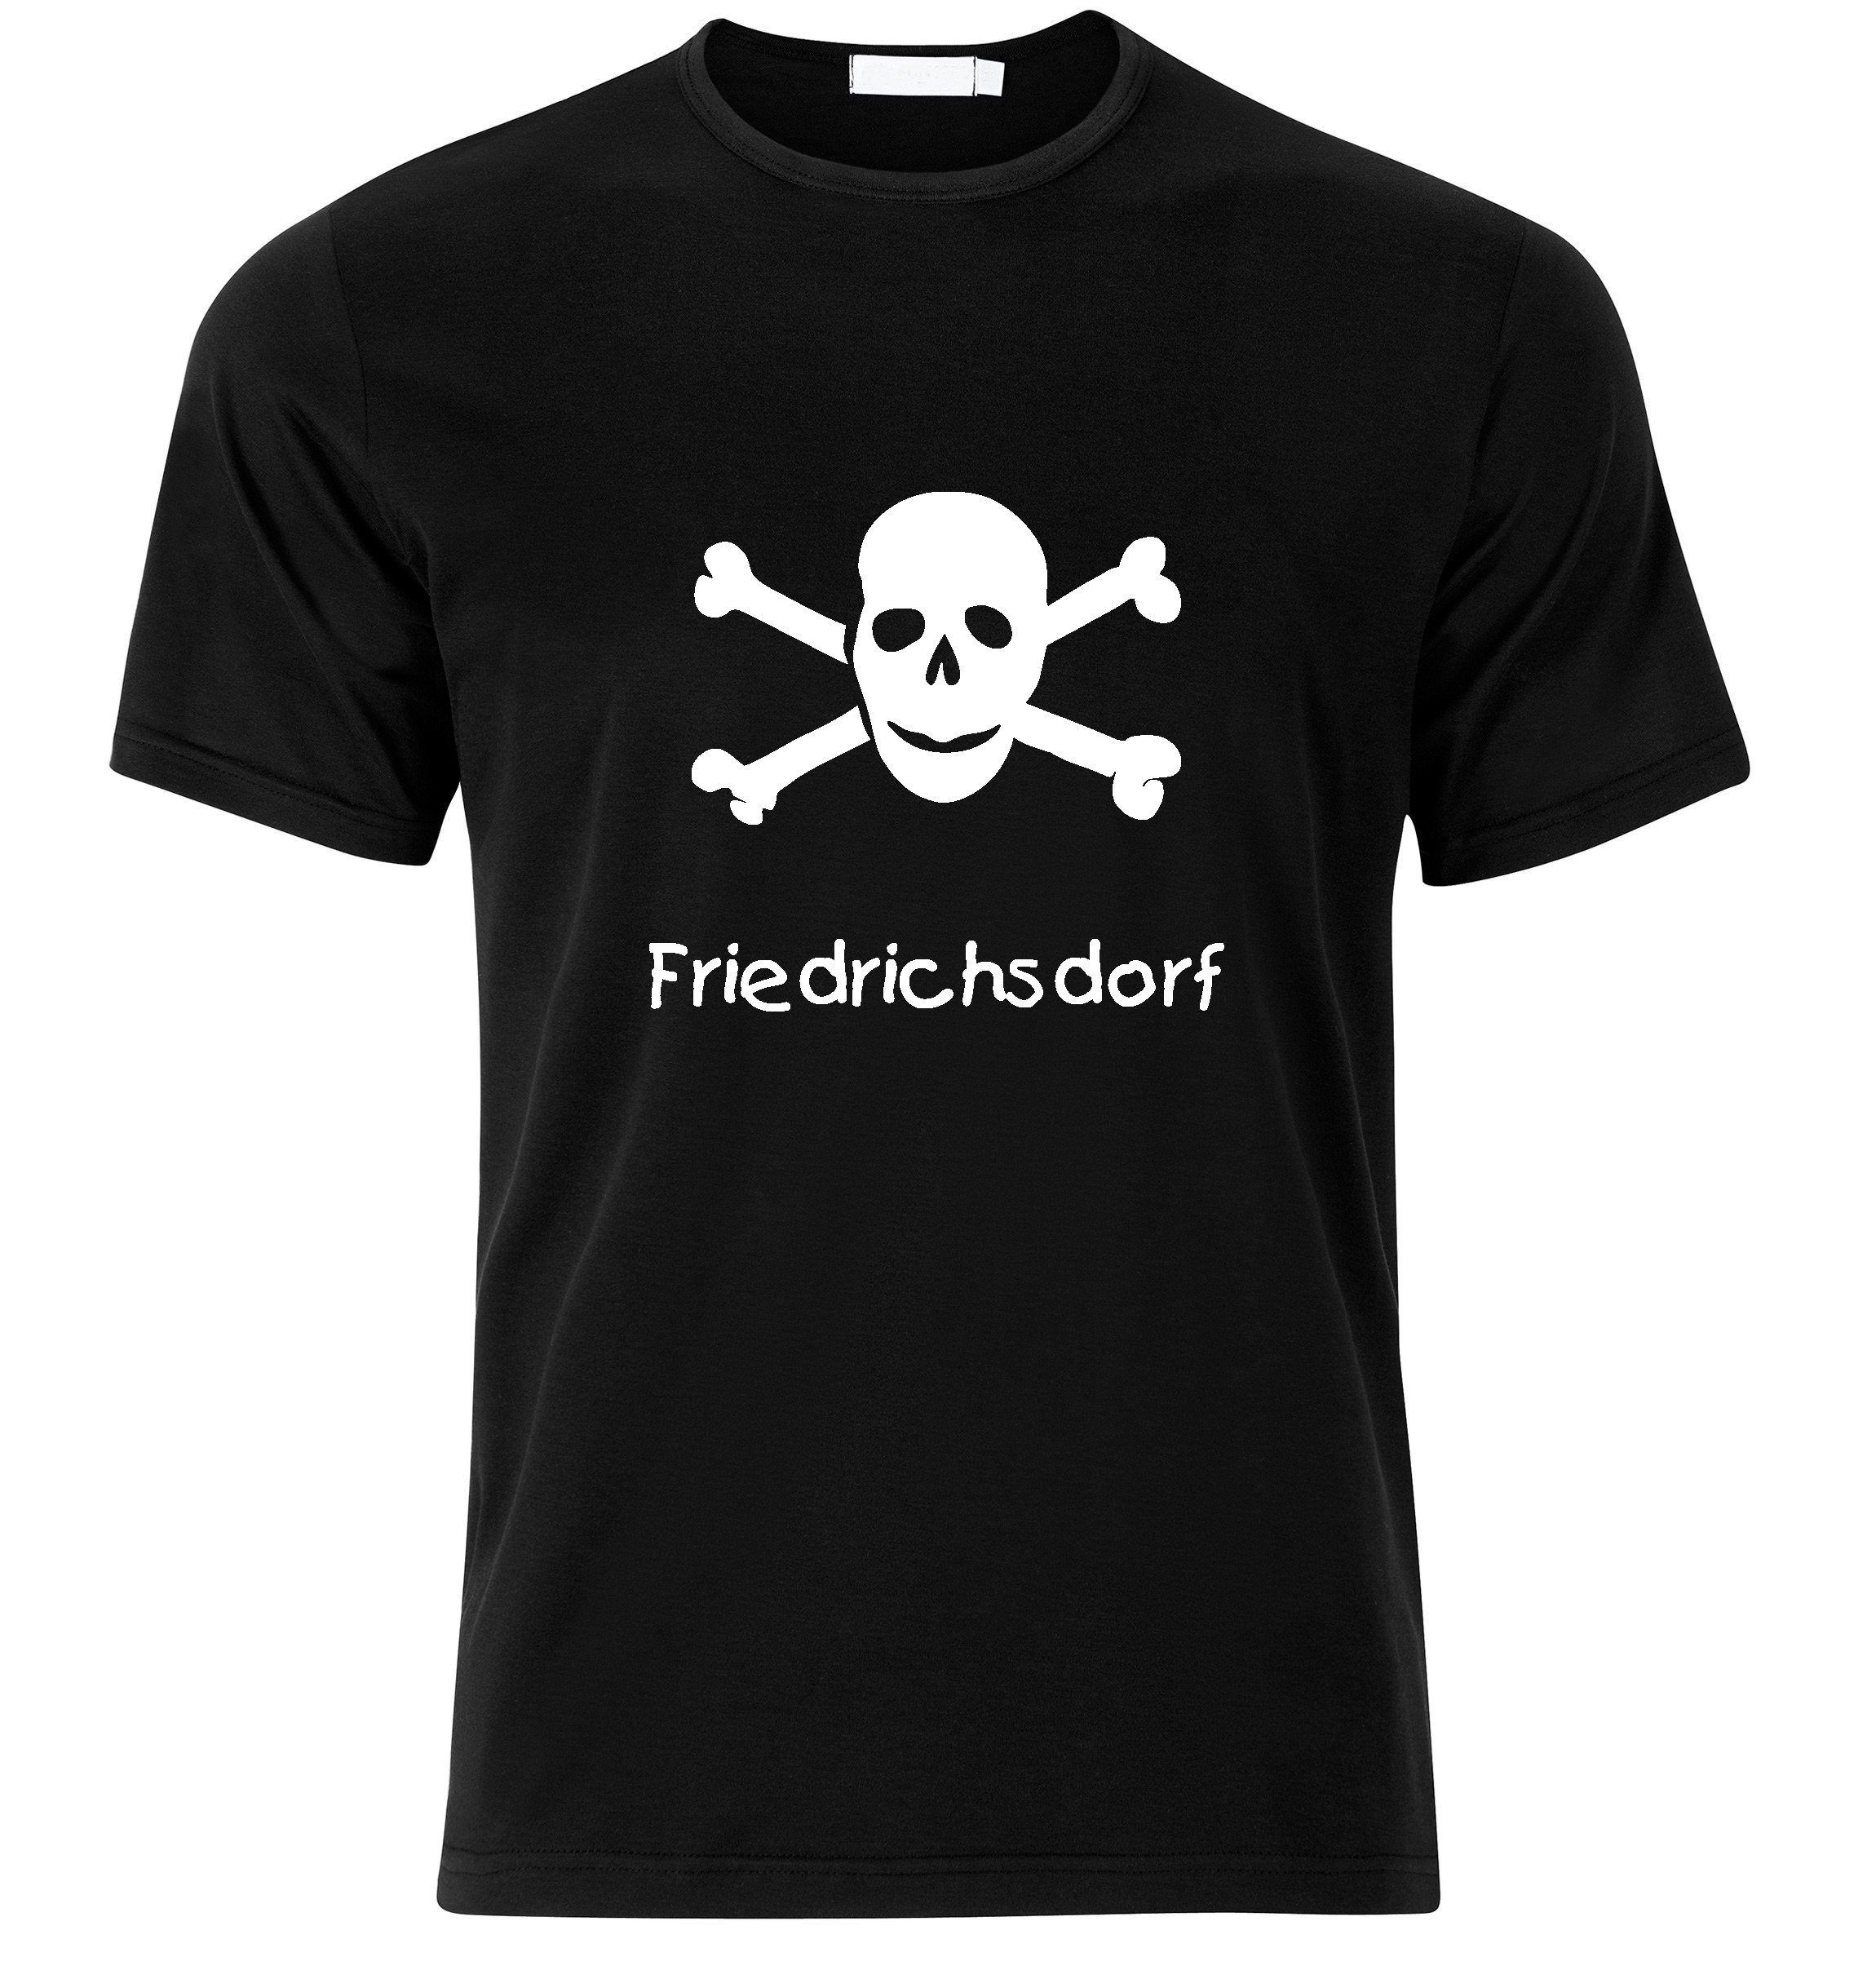 T-Shirt Friedrichsdorf Jolly Roger, Totenkopf